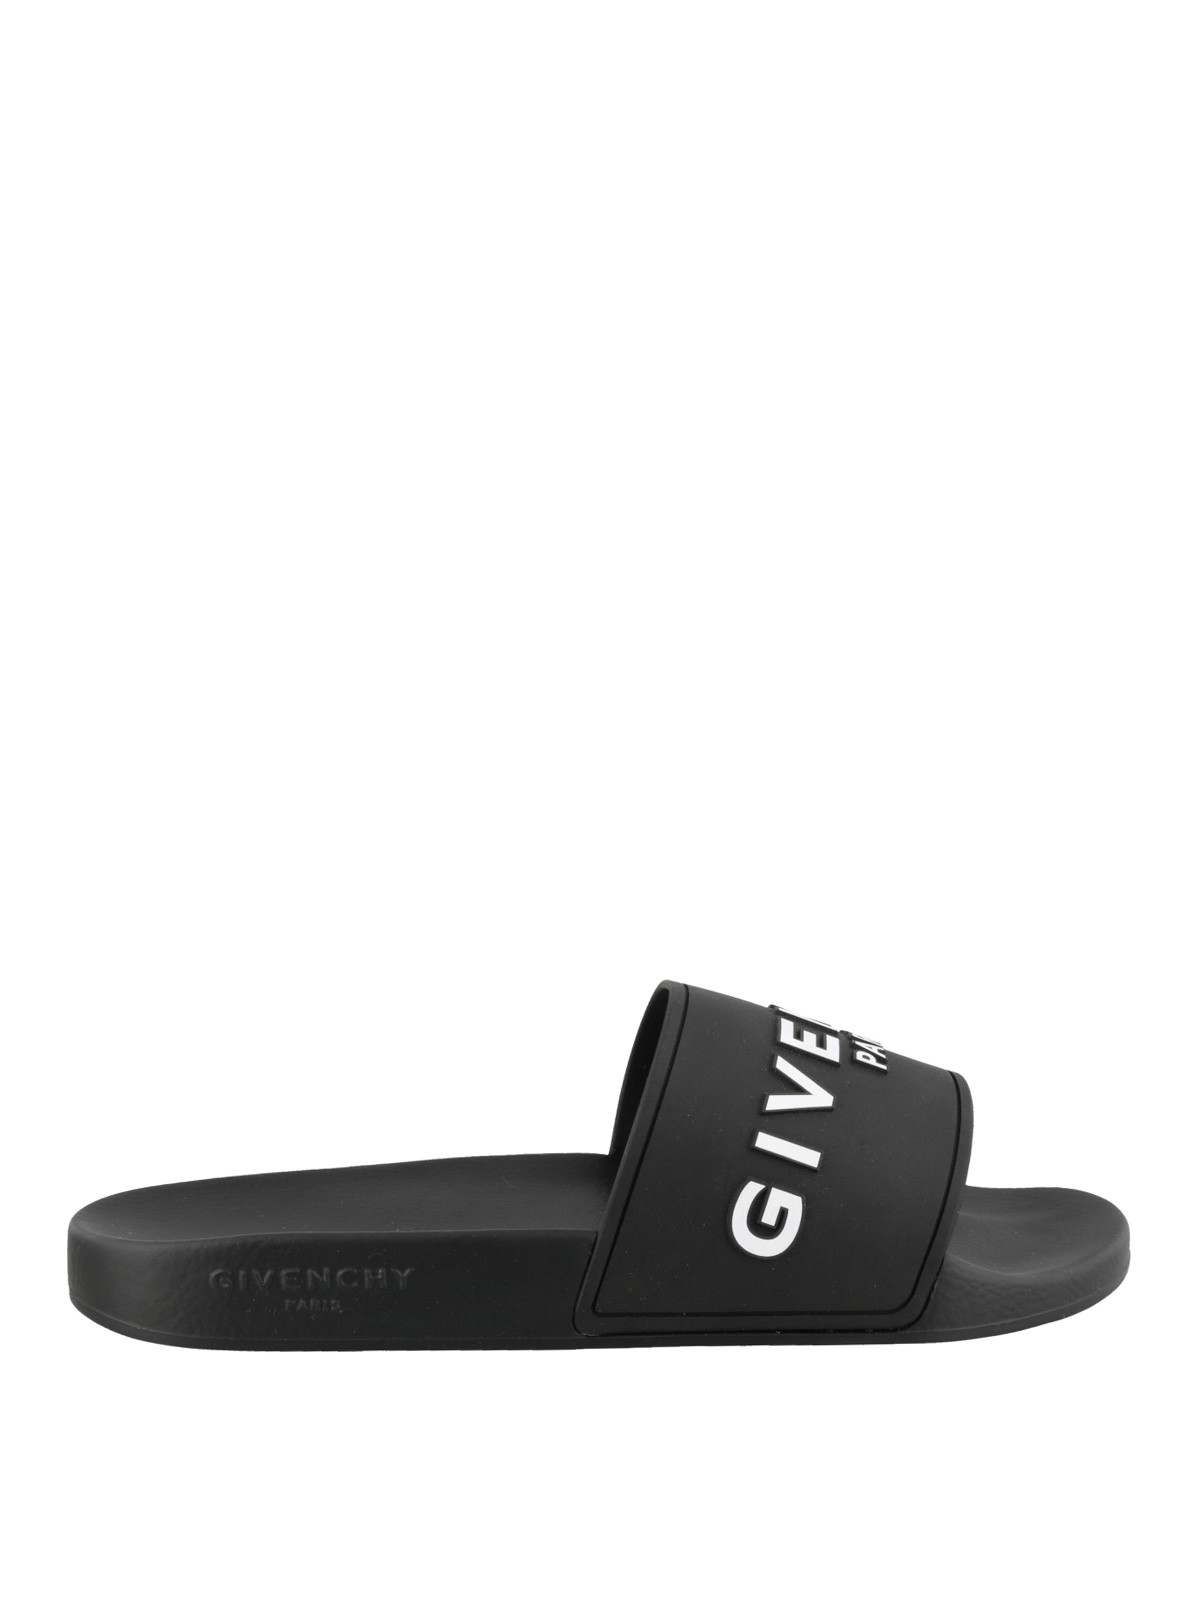 Flip flops Givenchy - Black flat slides - BH300HH0EP001 | iKRIX.com